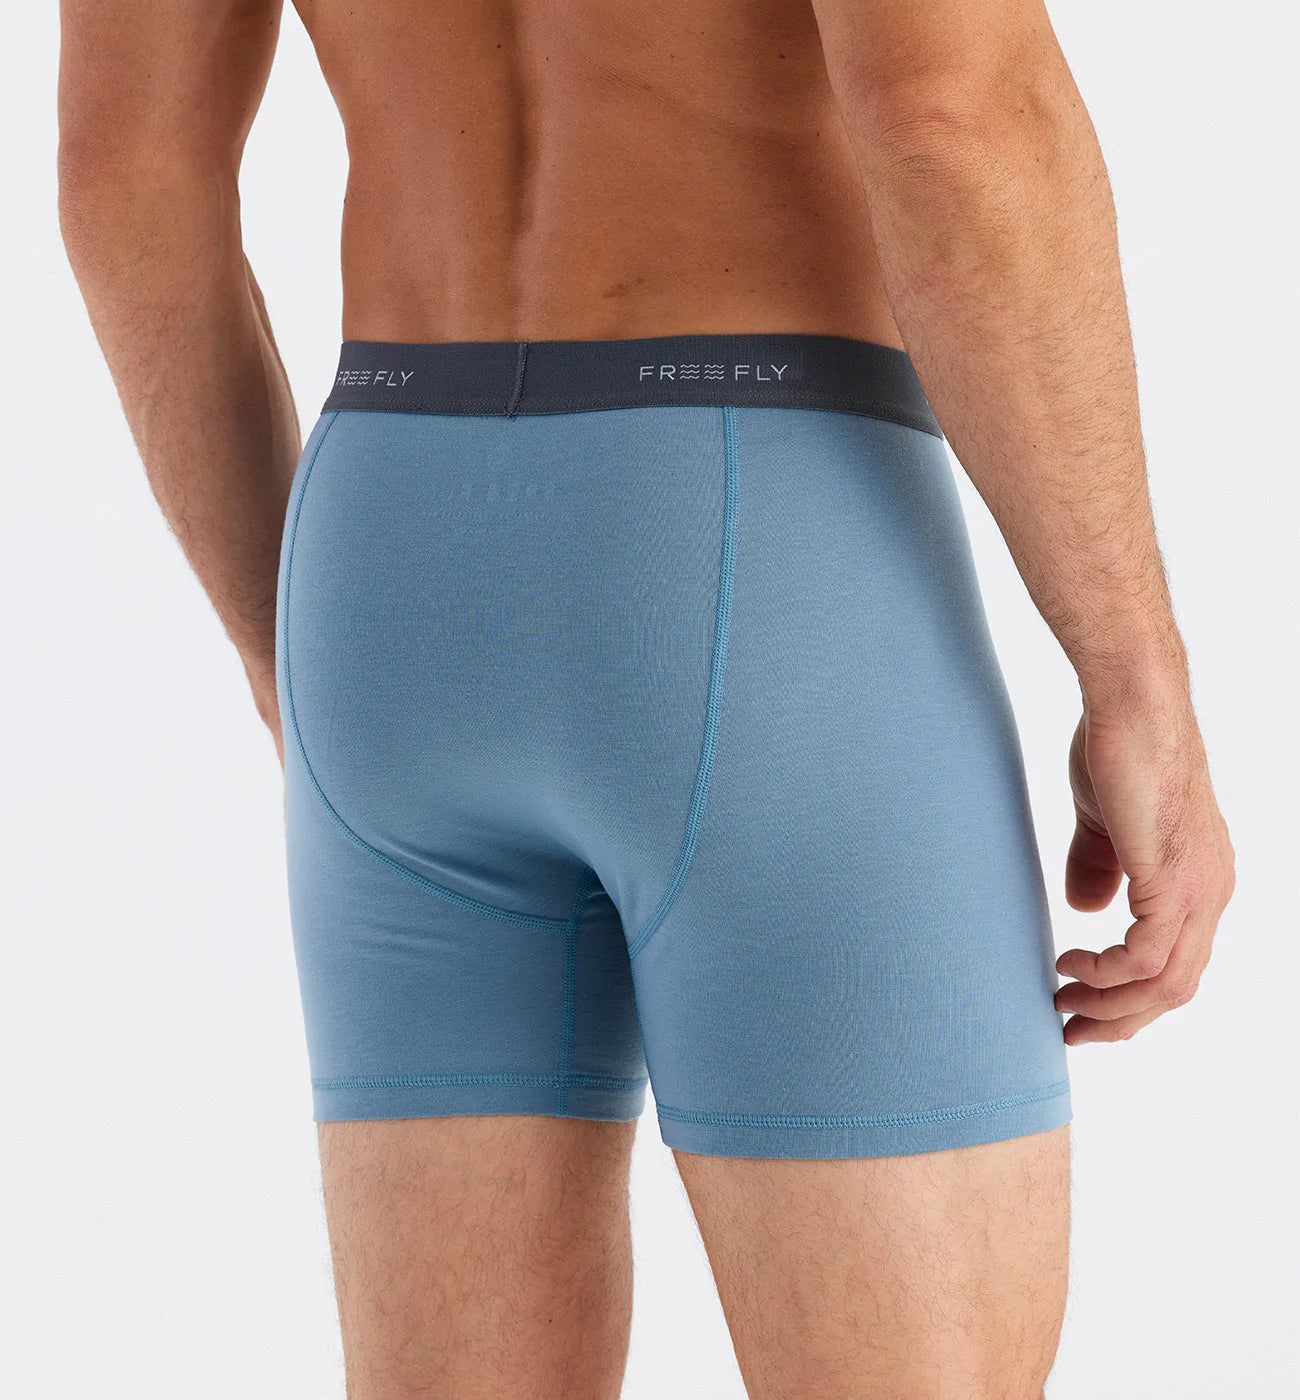 TOP PRO Underwear Briefs - Men's Cotton Stretch Underwear Briefs